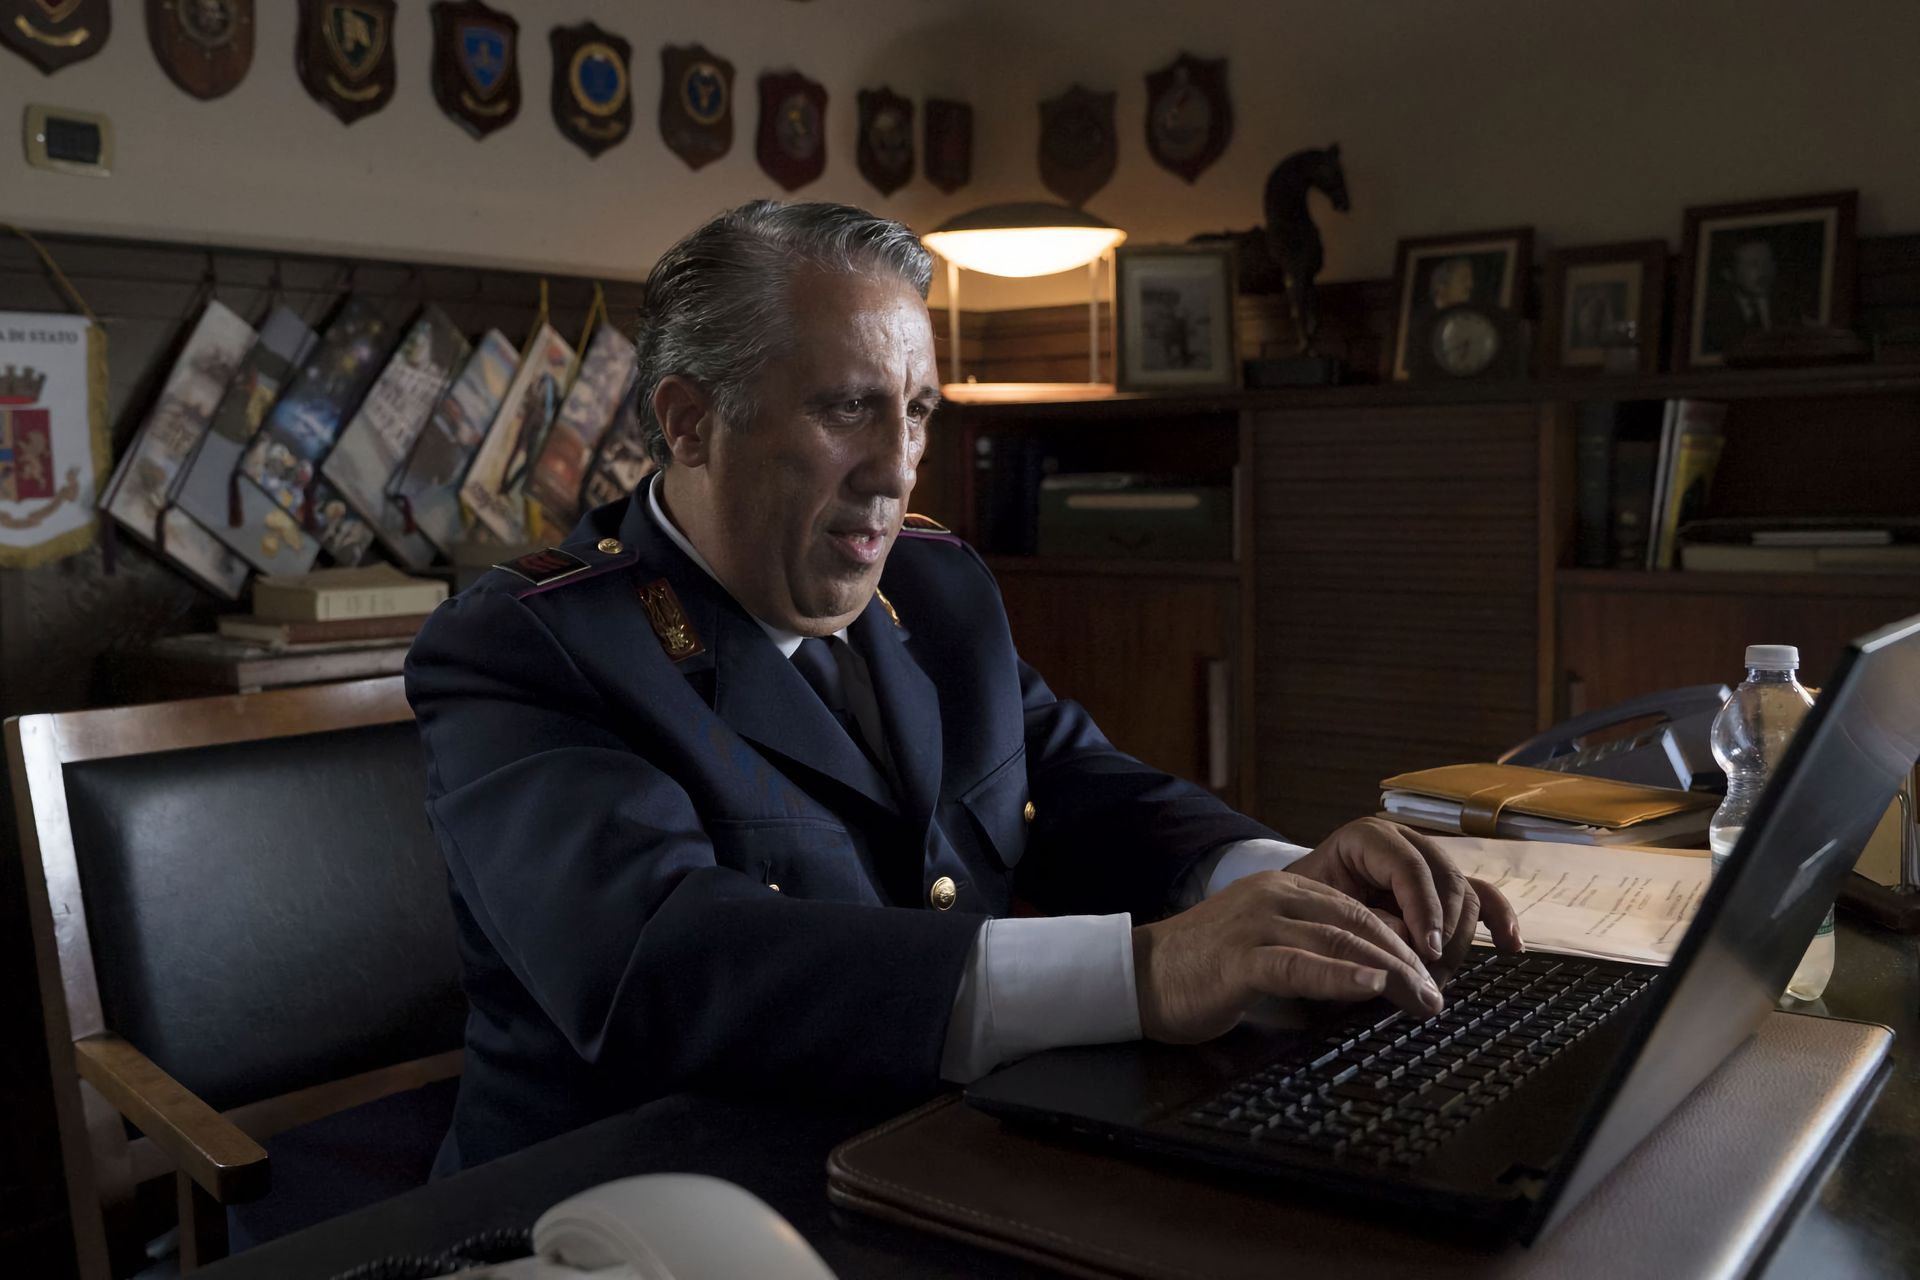 Aģents Katarella televīzijas seriālā "Inspektors Montalbano" ir vienīgais policists, kurš pieradis lietot datoru